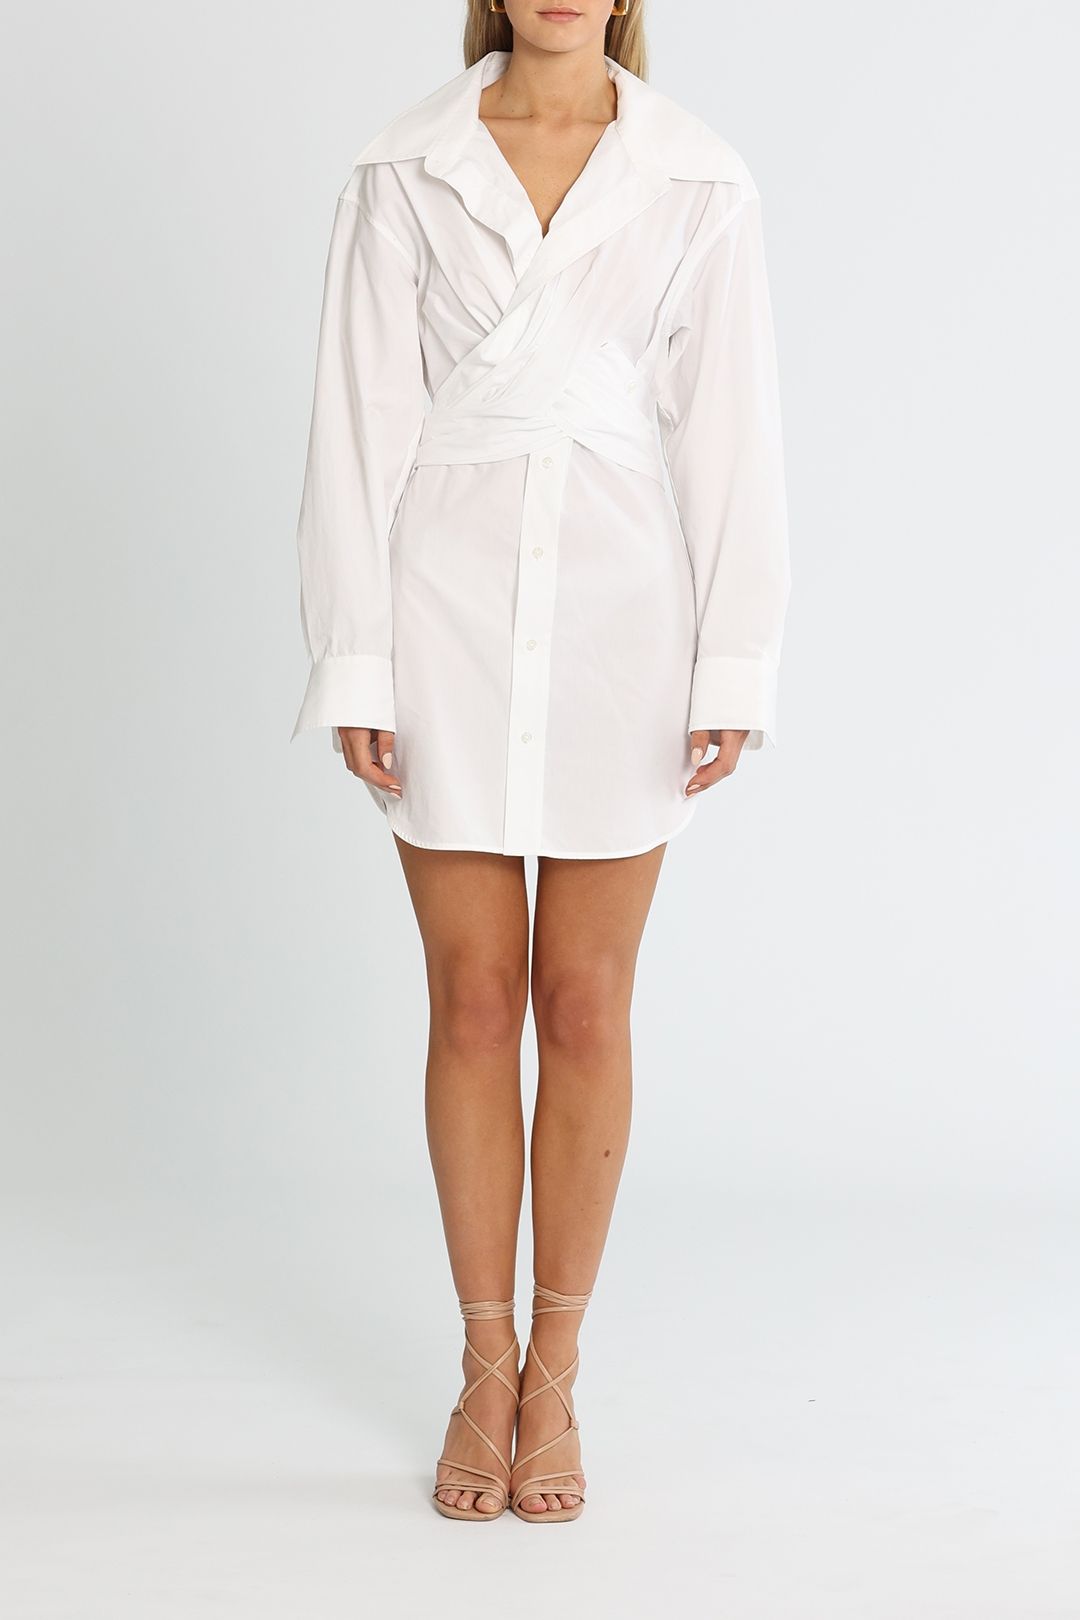 T by Alexander Wang Cross Front Shirt Dress White